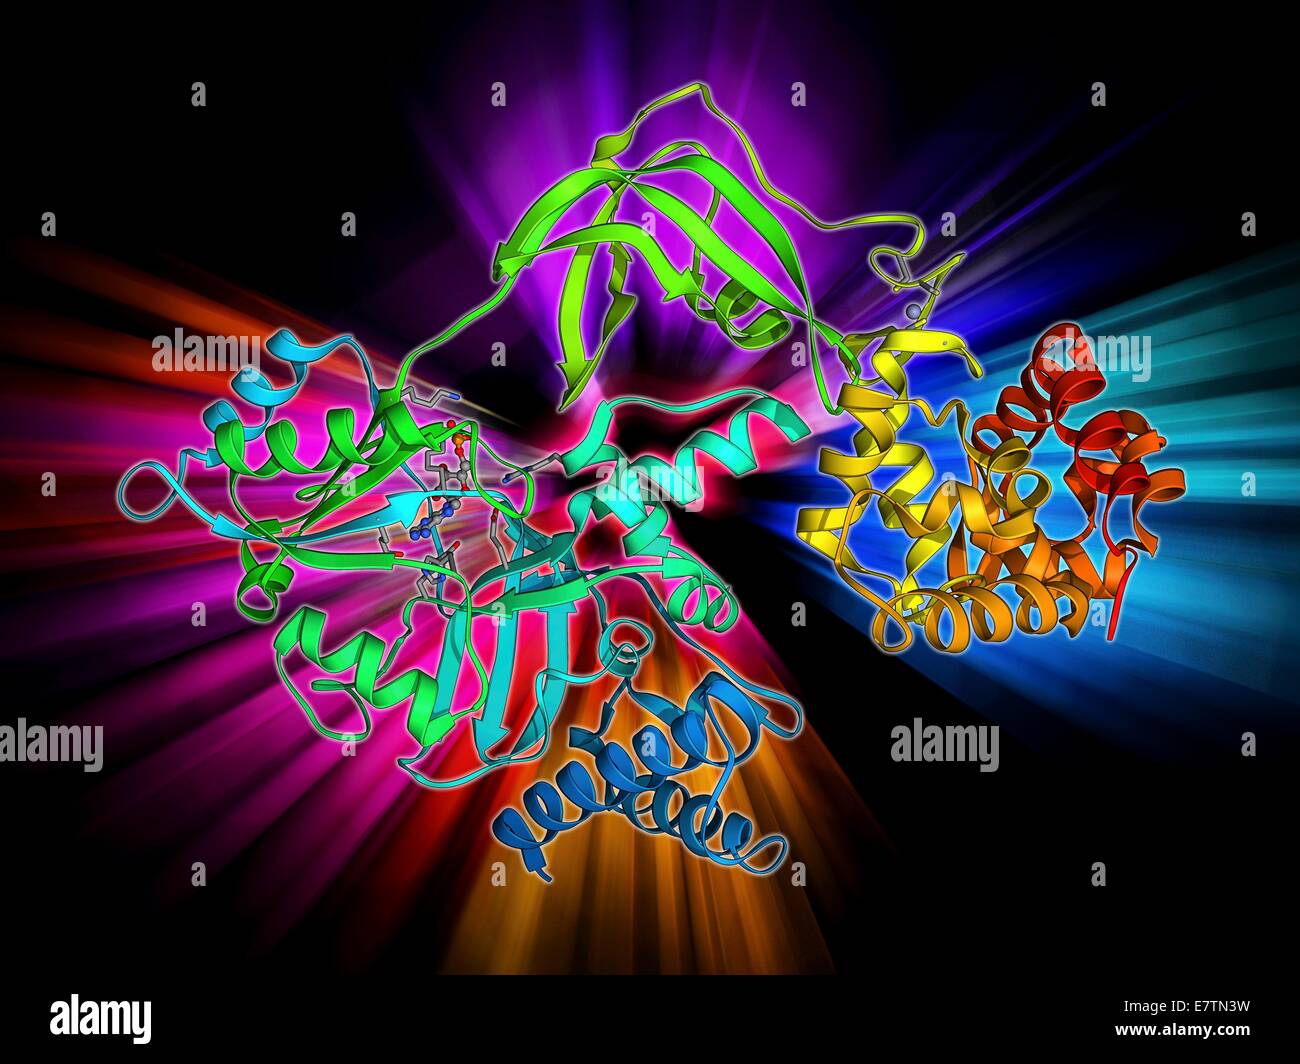 NAD-abhängige DNA Ligase. Molekulares Modell des NAD (+)-abhängigen DNA Ligase. DNA-Ligase ist ein Enzym, die beiden Stränge der DNA (Desoxyribonukleinsäure) miteinander verbindet. Stockfoto